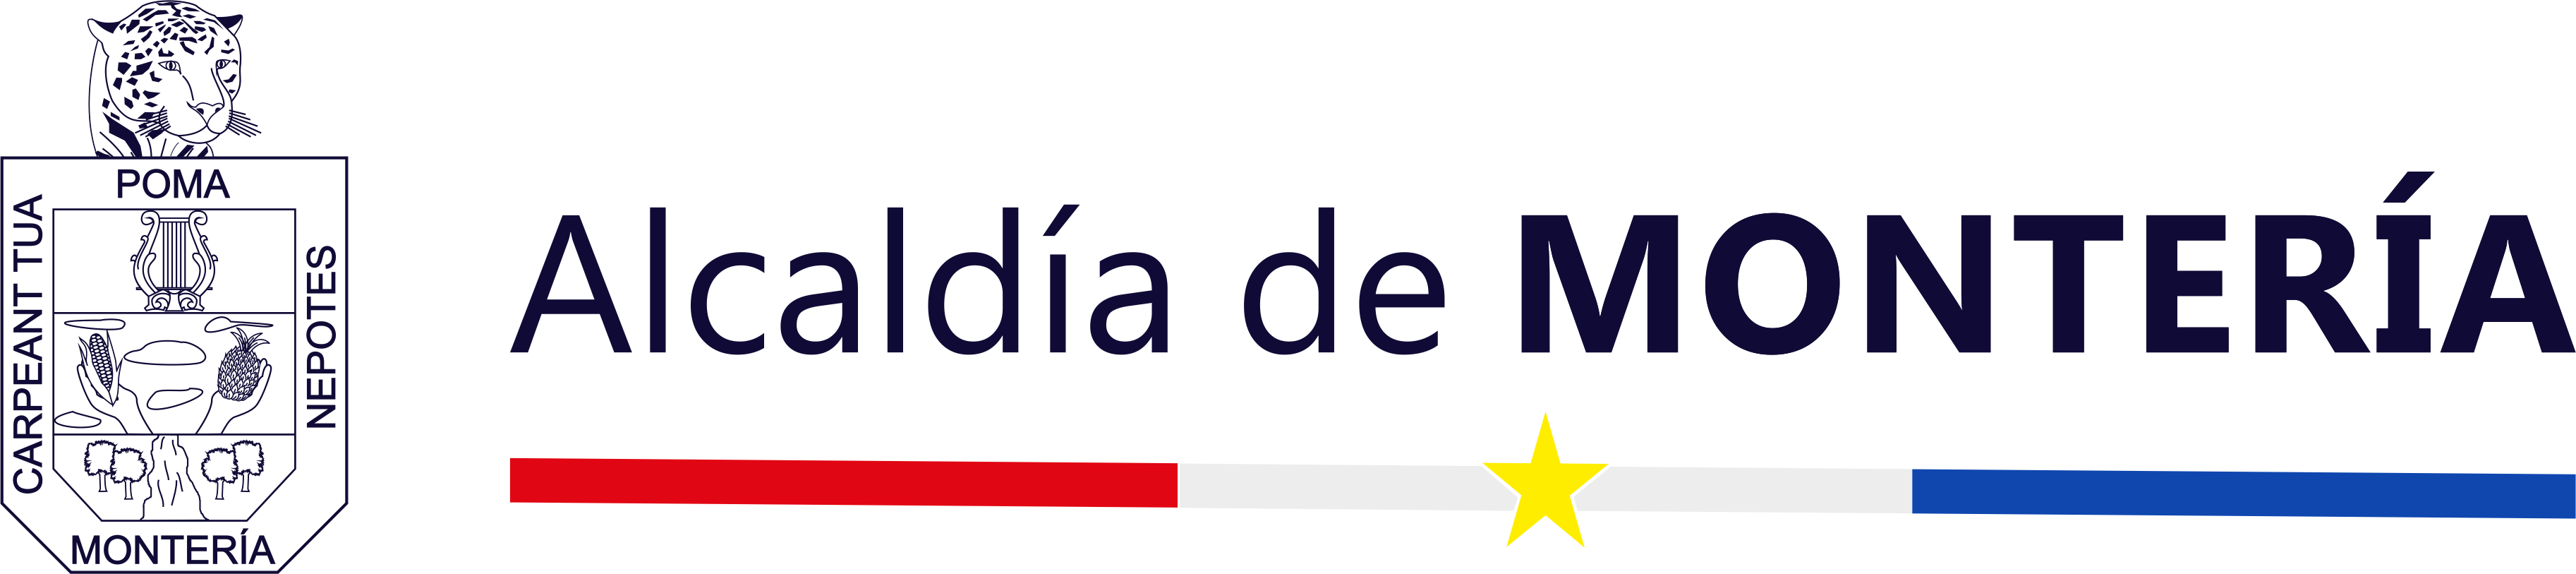 Alcaldía de Montería - Córdoba